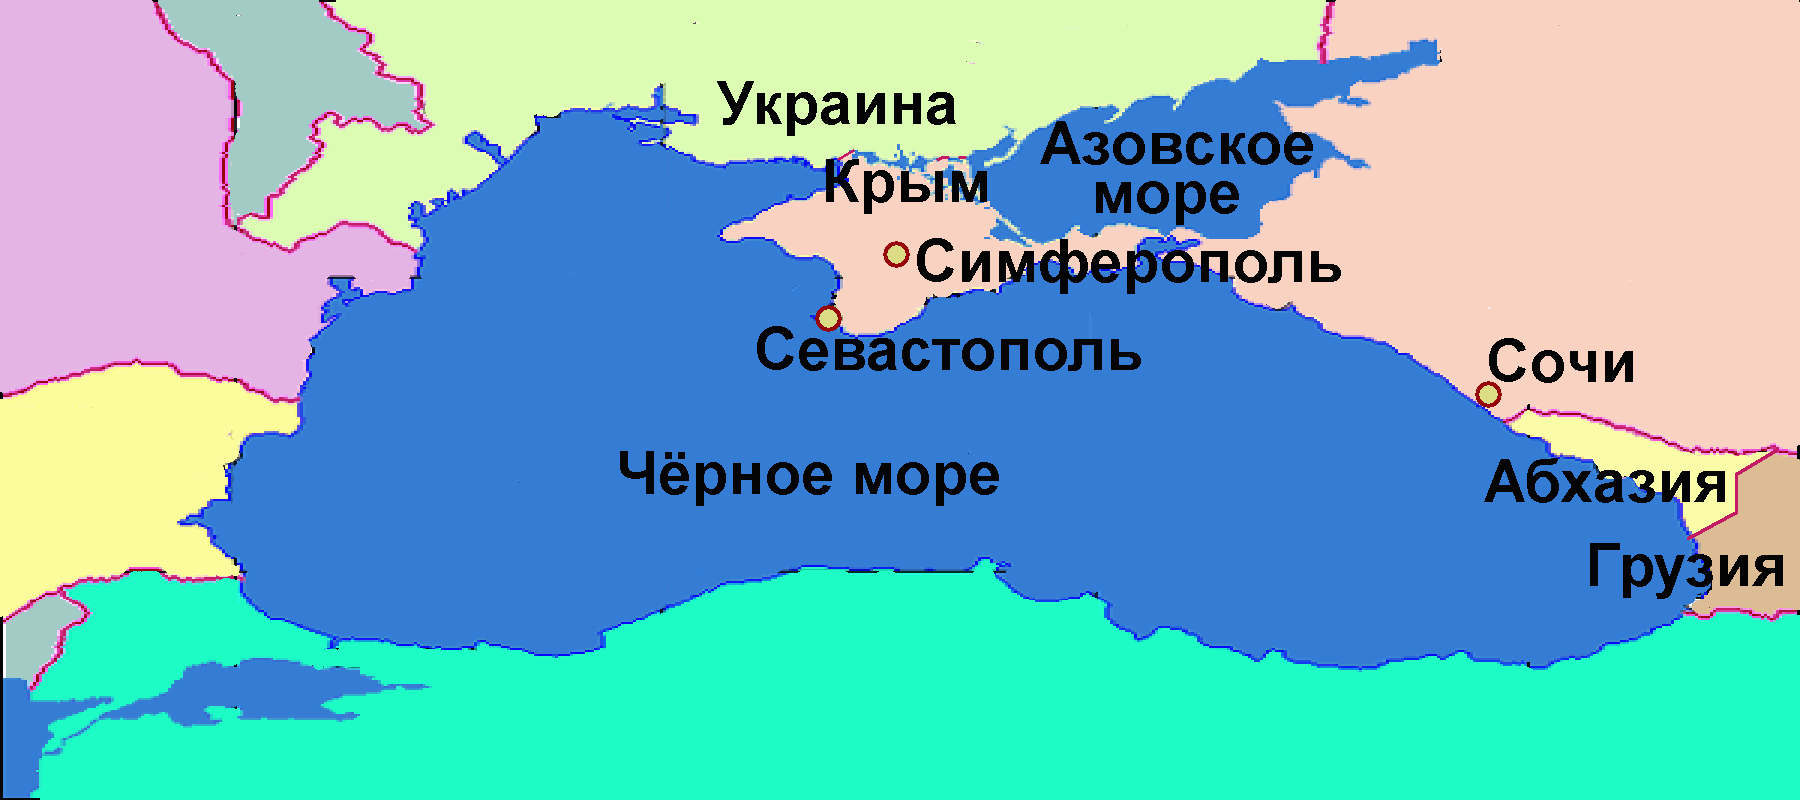 Государства черного моря на карте